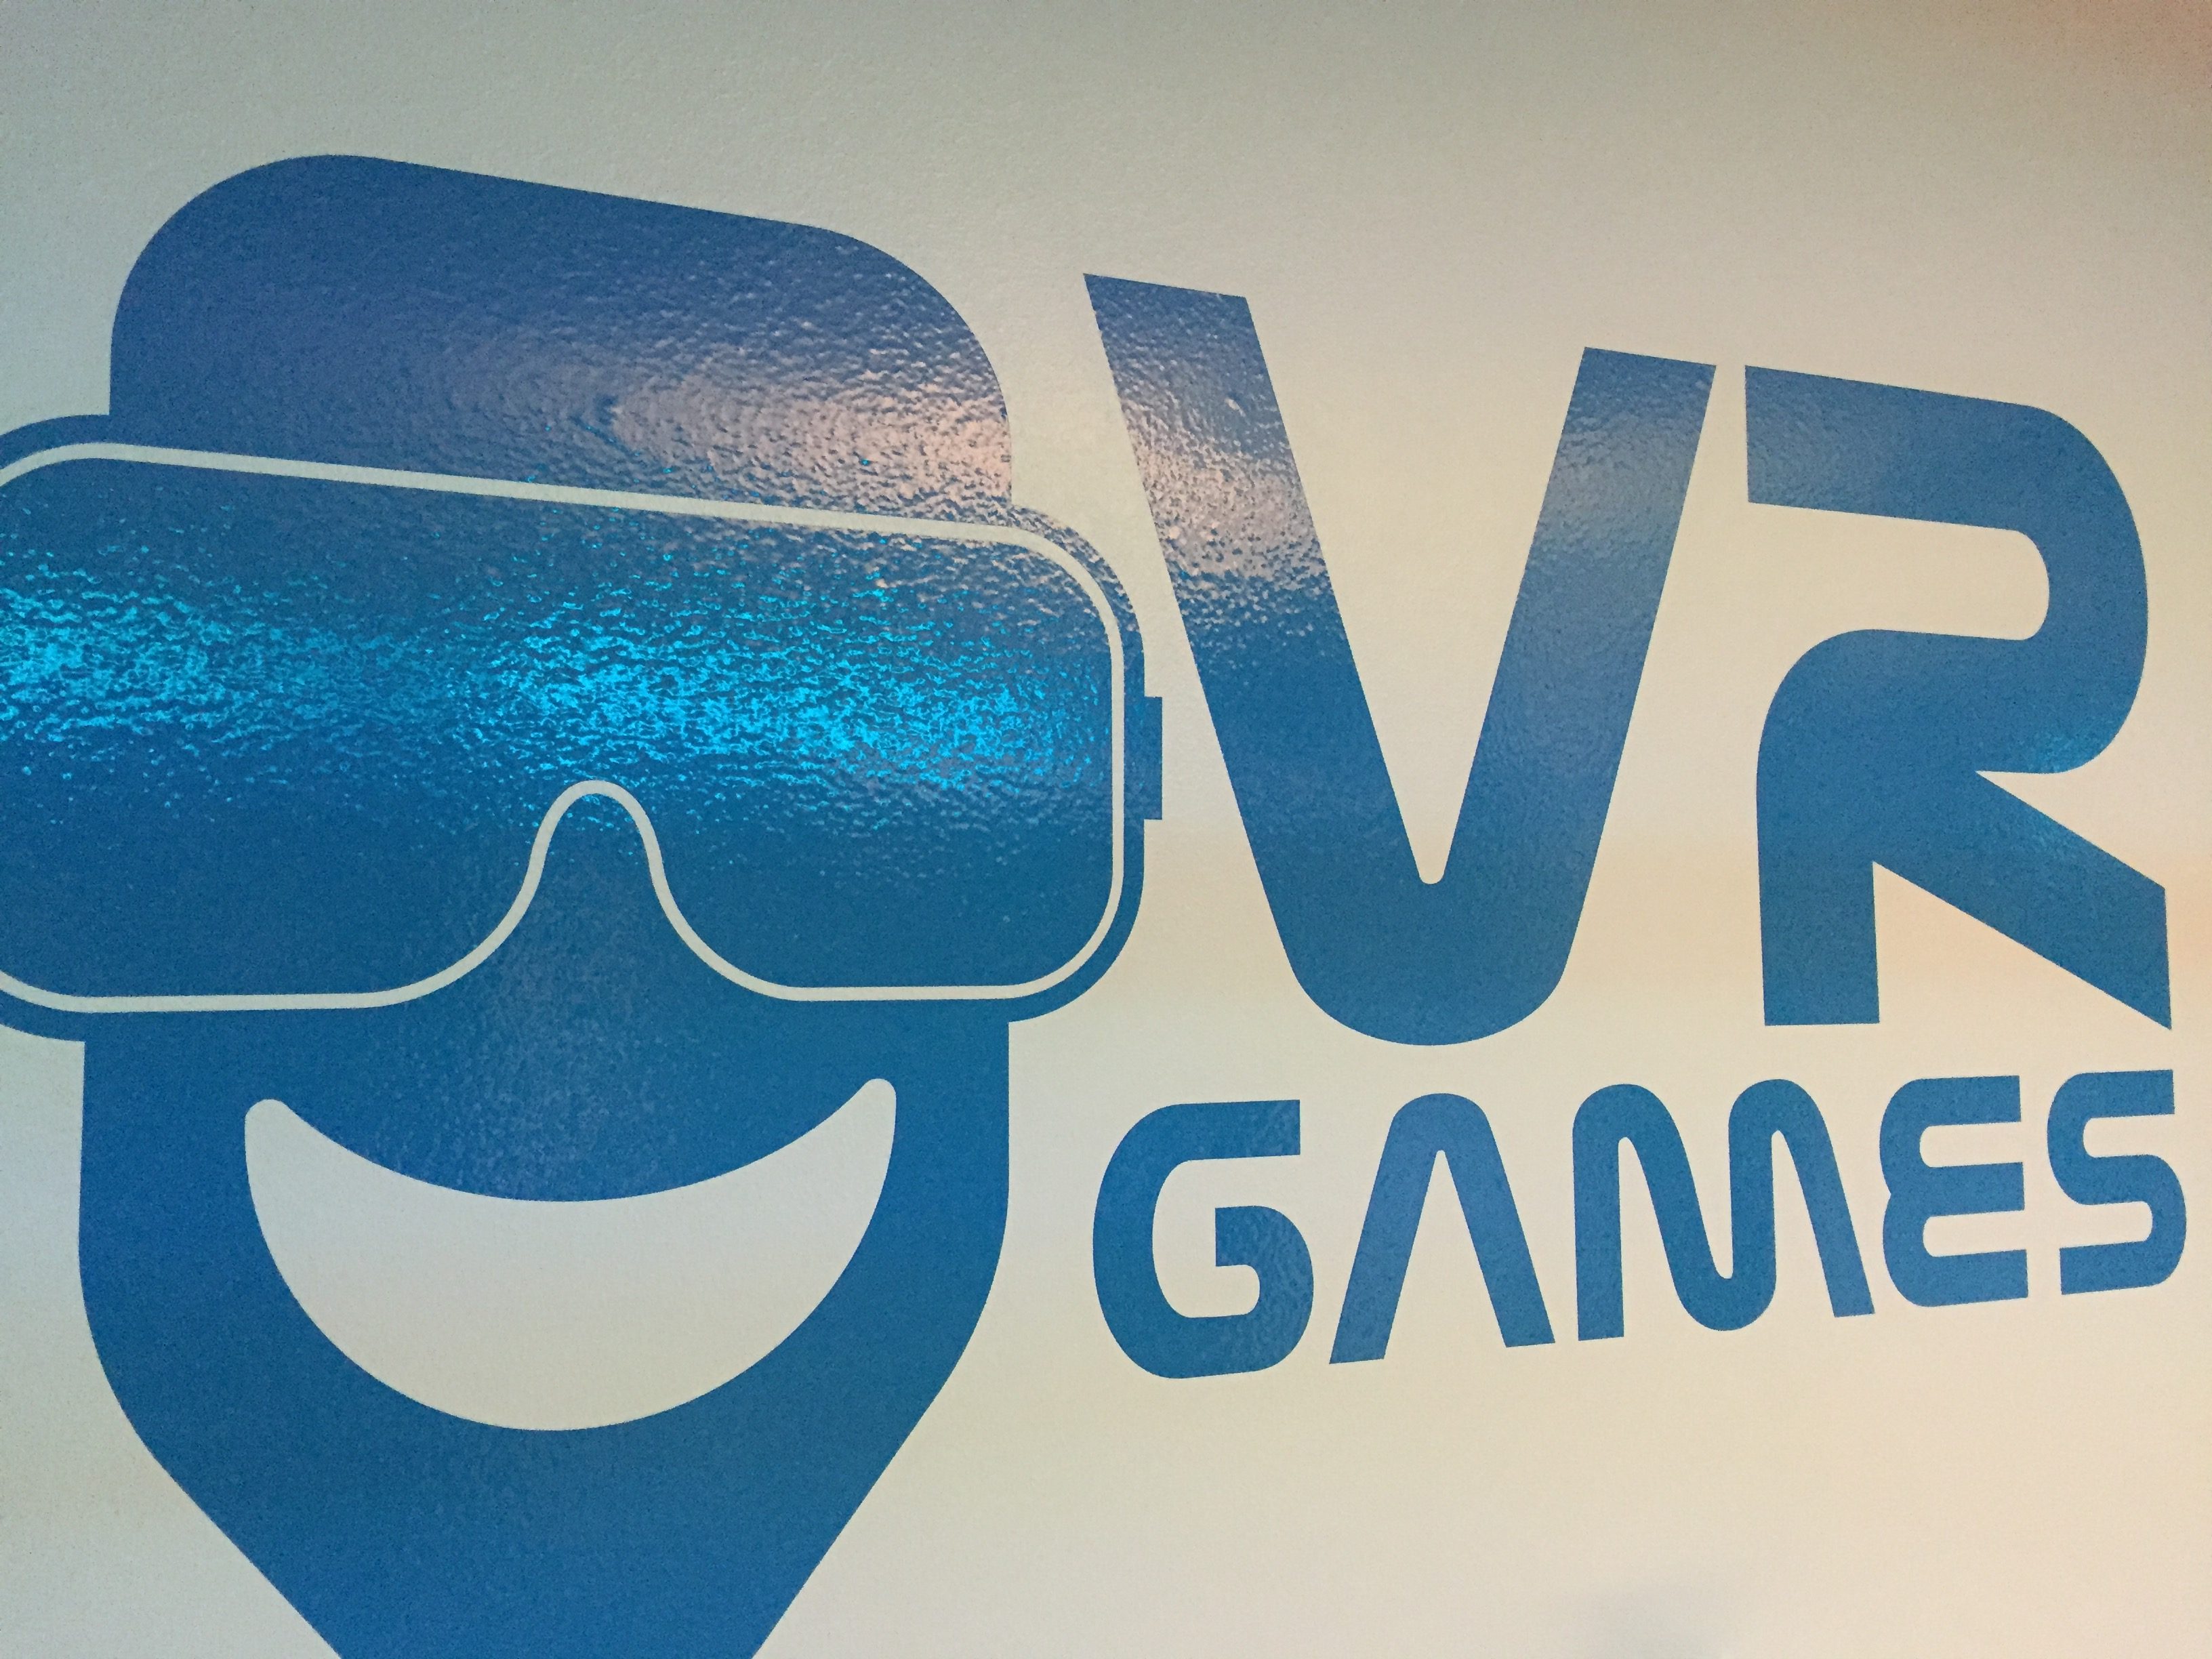 iTAVISEN tok turen til VR Games i Oslo.